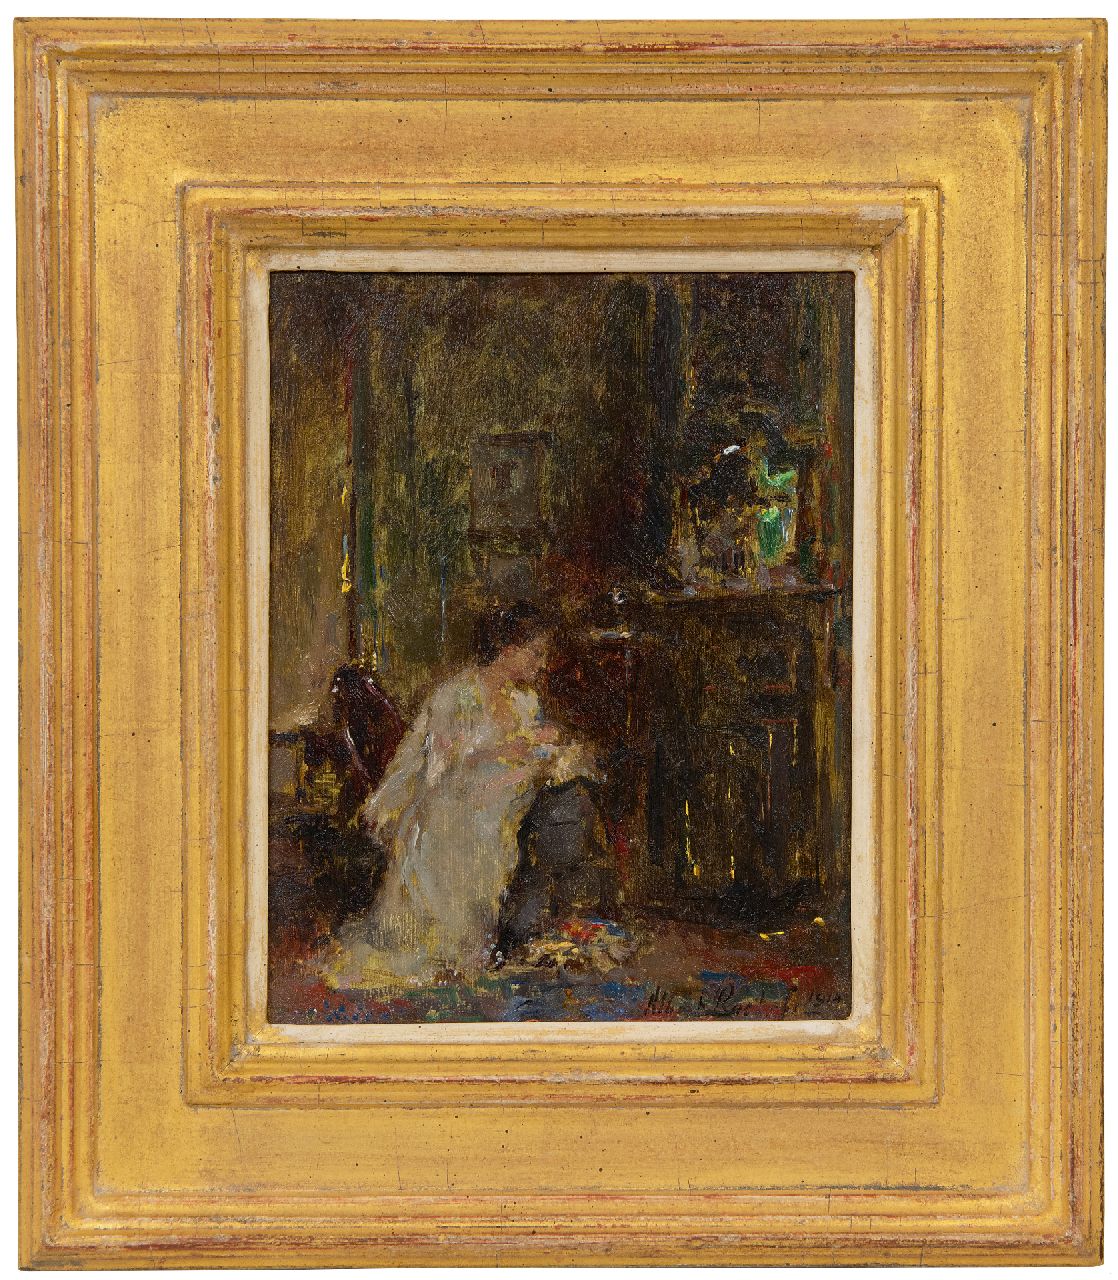 Roelofs O.W.A.  | Otto Willem Albertus 'Albert' Roelofs | Schilderijen te koop aangeboden | Vrouw in een interieur, olieverf op paneel 17,8 x 13,8 cm, gesigneerd rechtsonder en gedateerd 1914